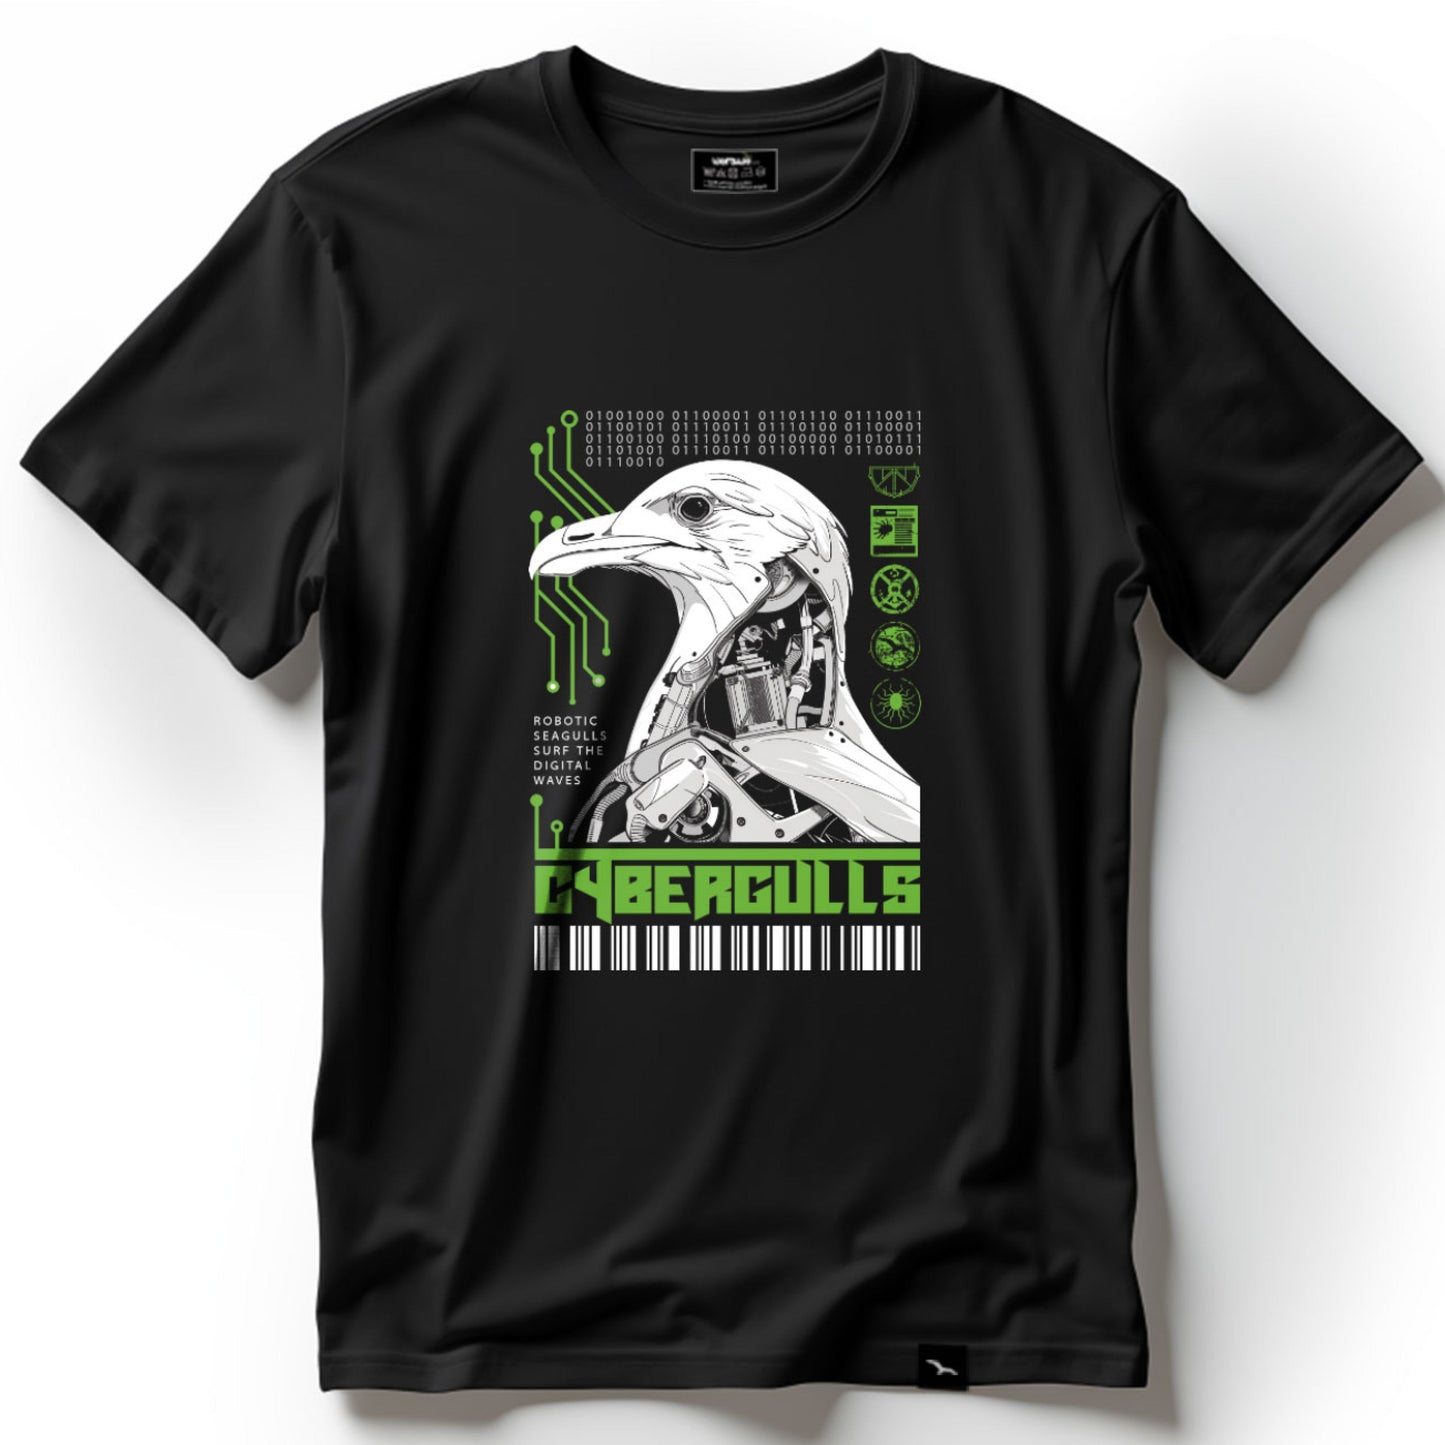 T-Shirt "Cybergulls"